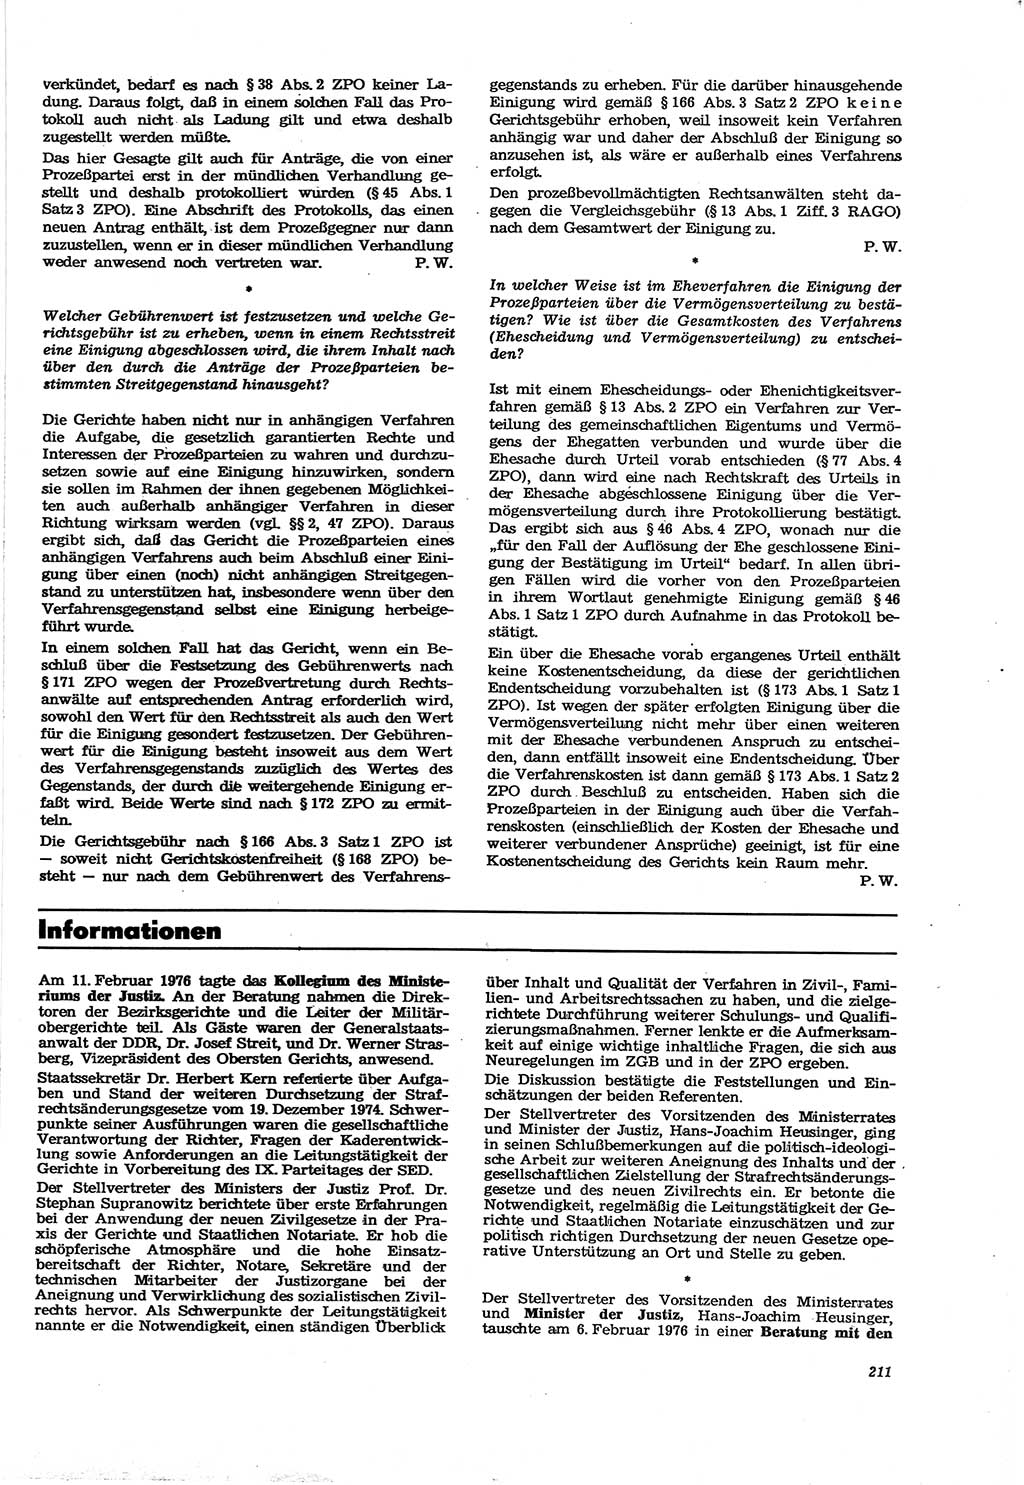 Neue Justiz (NJ), Zeitschrift für Recht und Rechtswissenschaft [Deutsche Demokratische Republik (DDR)], 30. Jahrgang 1976, Seite 211 (NJ DDR 1976, S. 211)